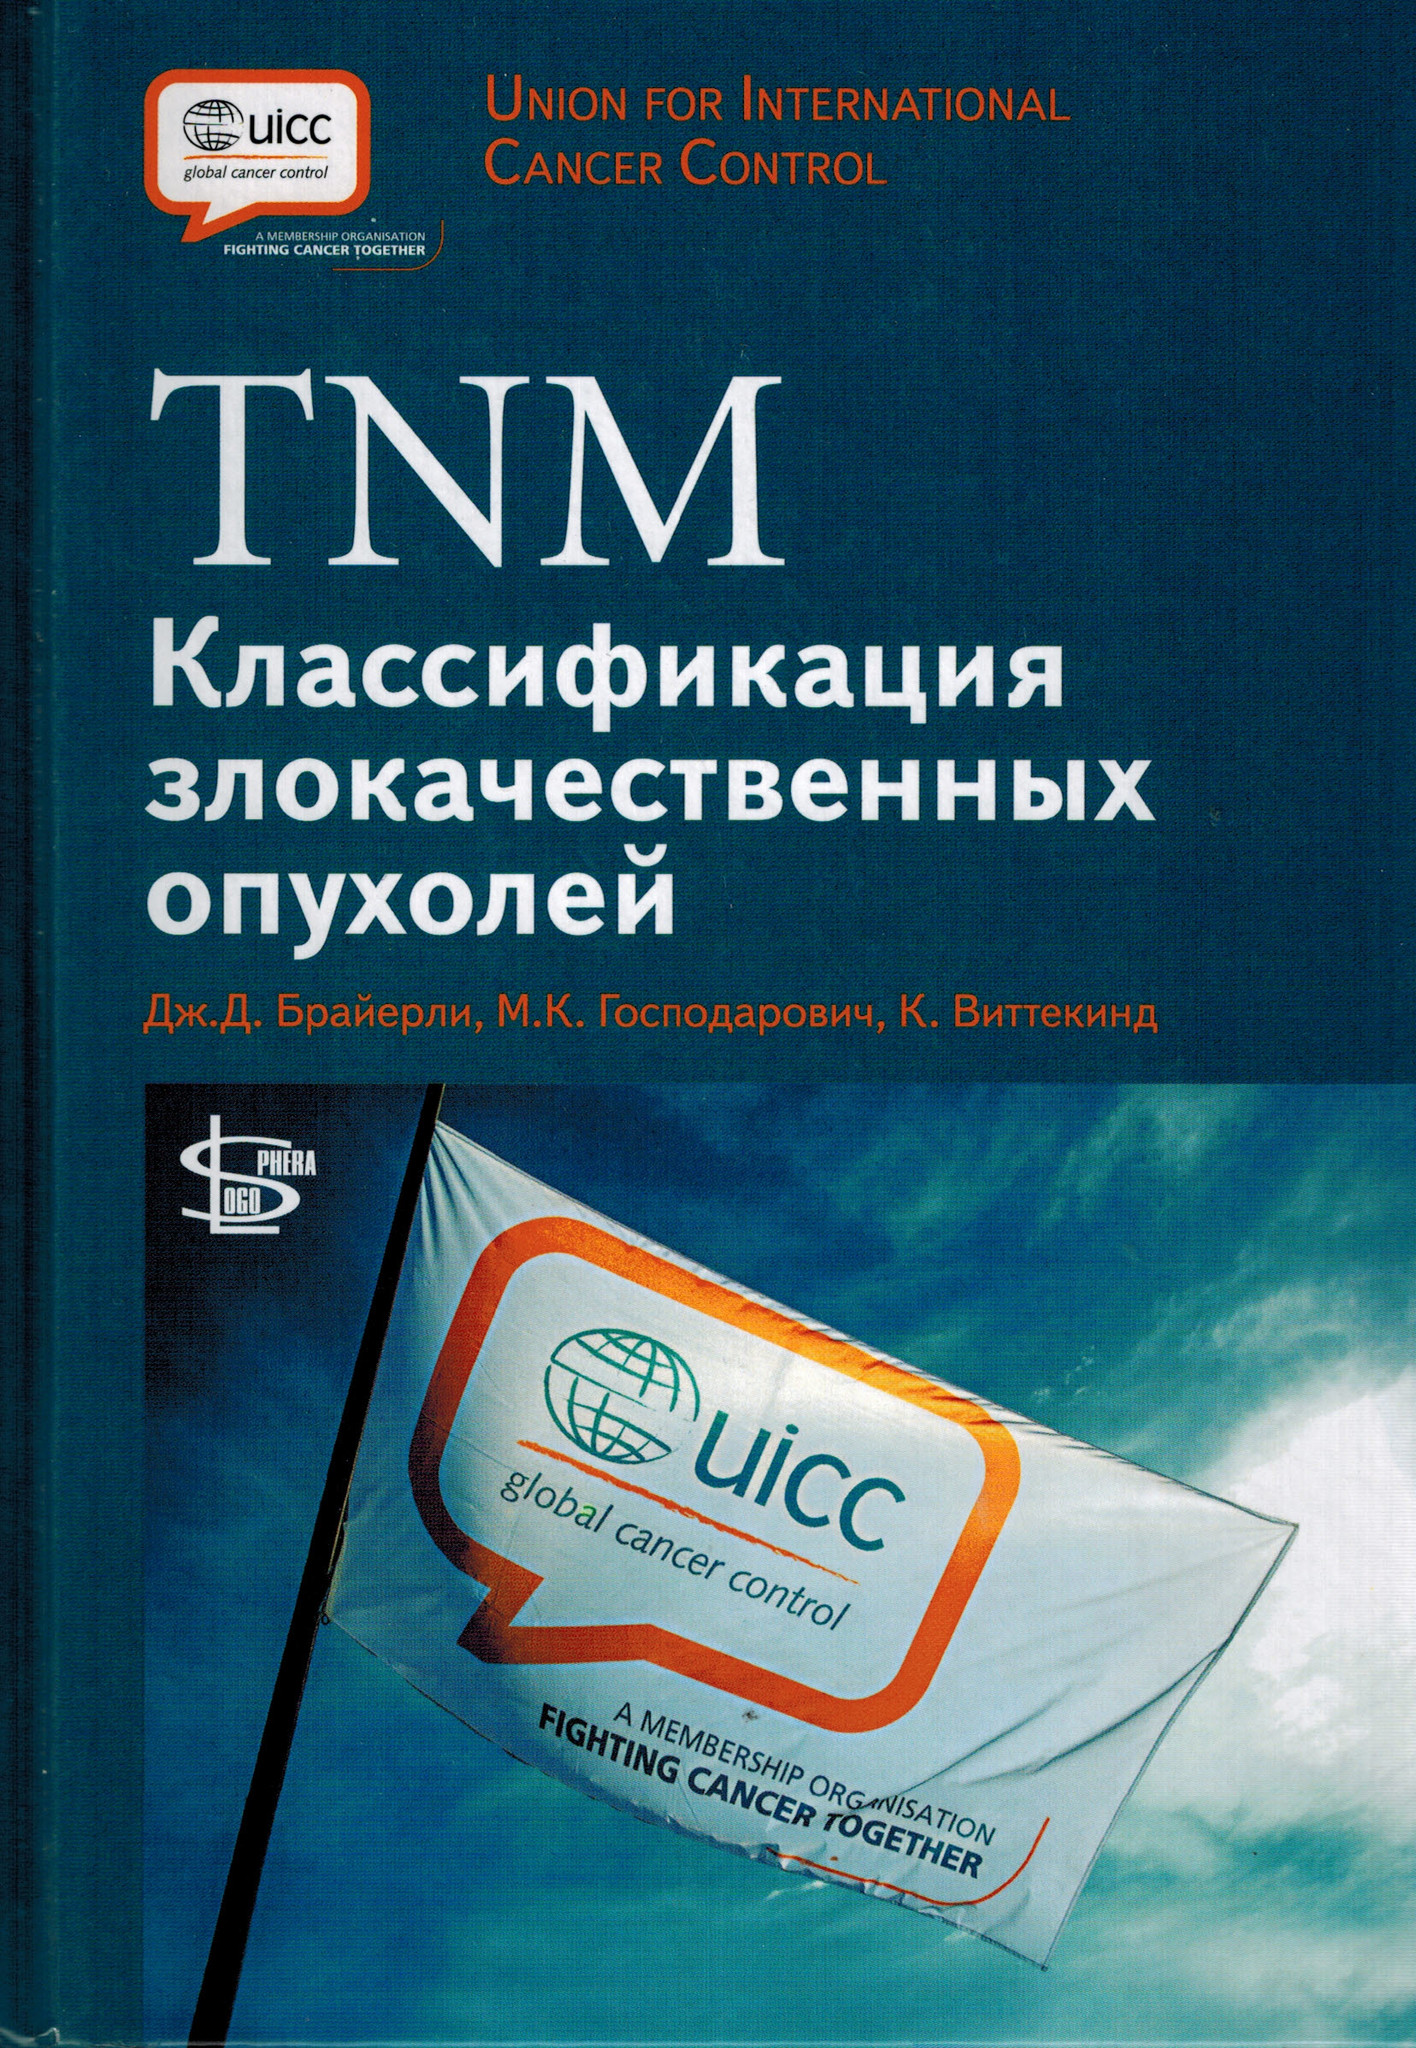 Каталог TNM: Классификация злокачественных опухолей tnm.jpg